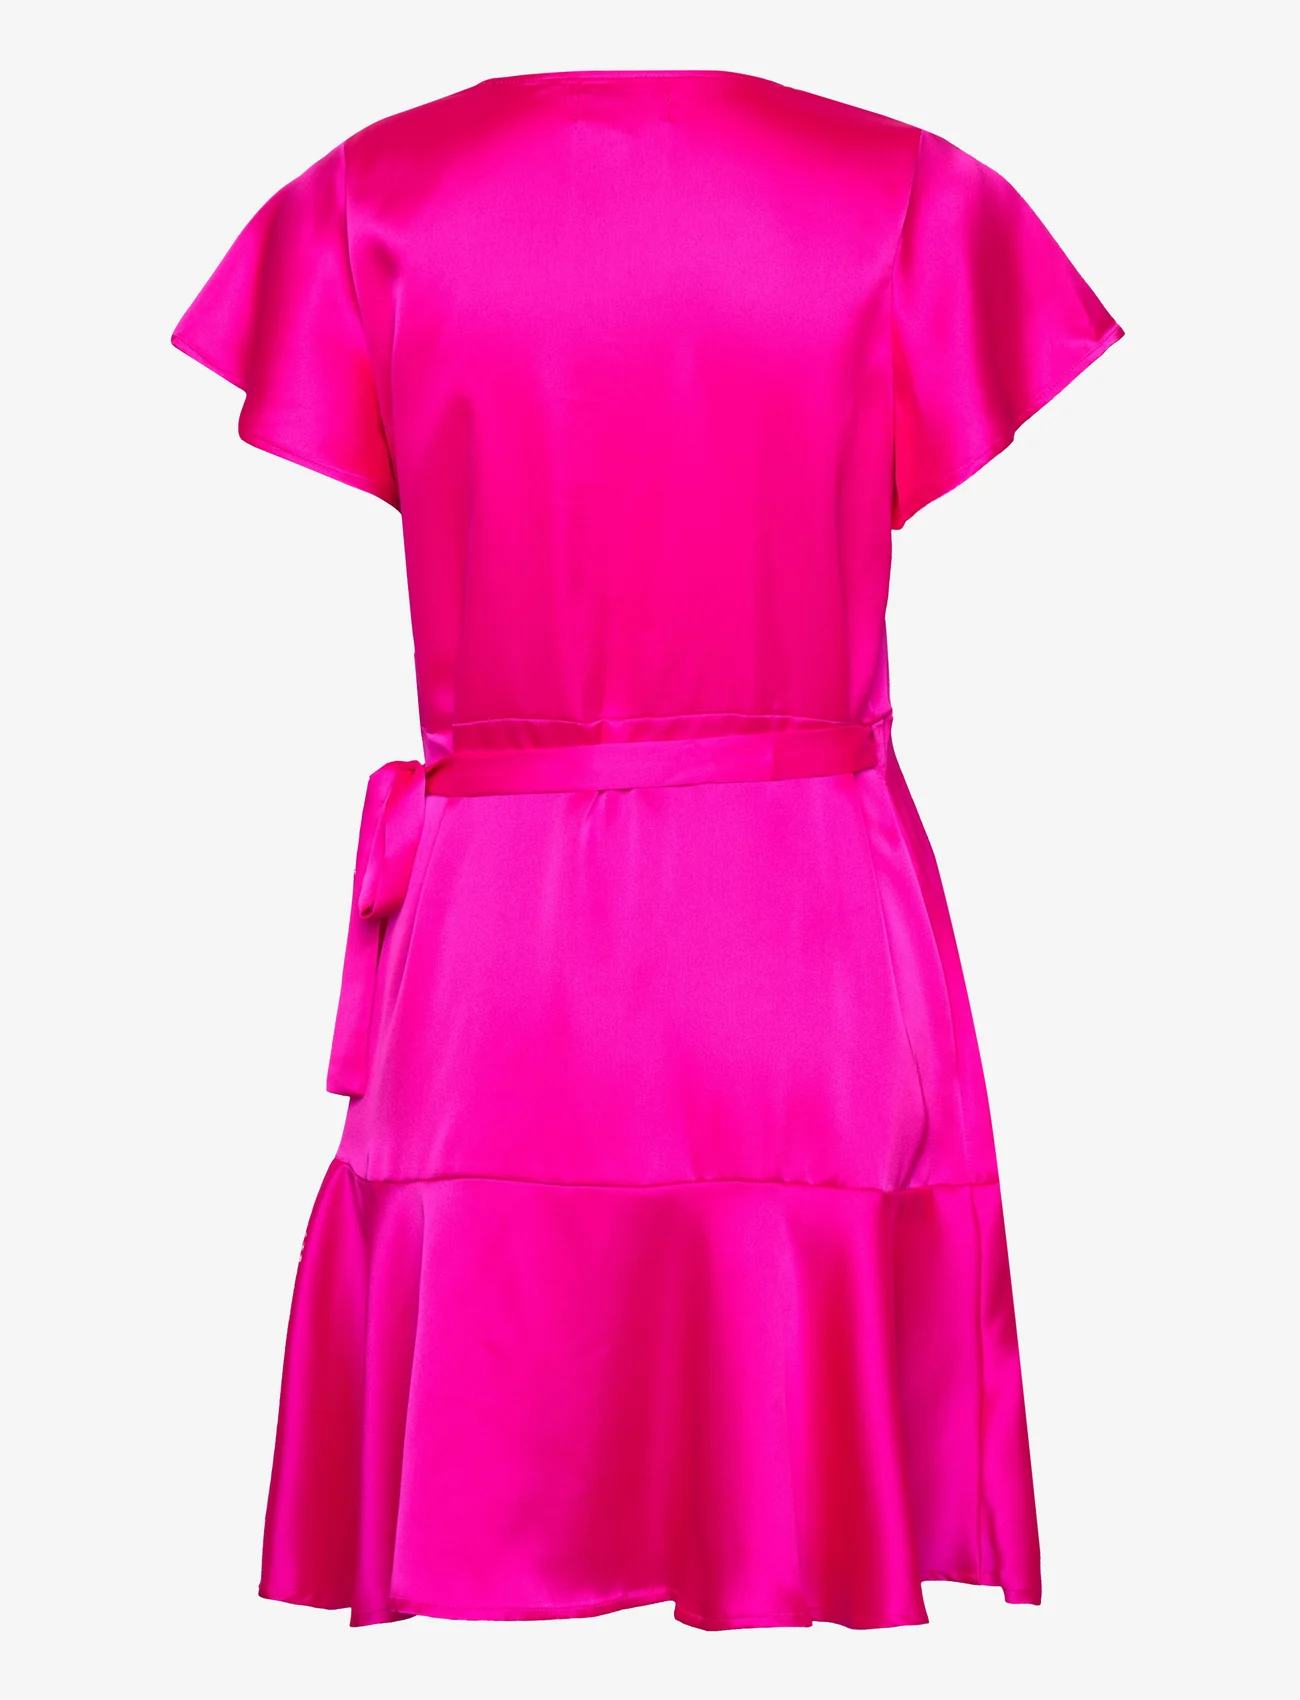 Lollys Laundry - Miranda Wrap around dress - odzież imprezowa w cenach outletowych - pink - 1